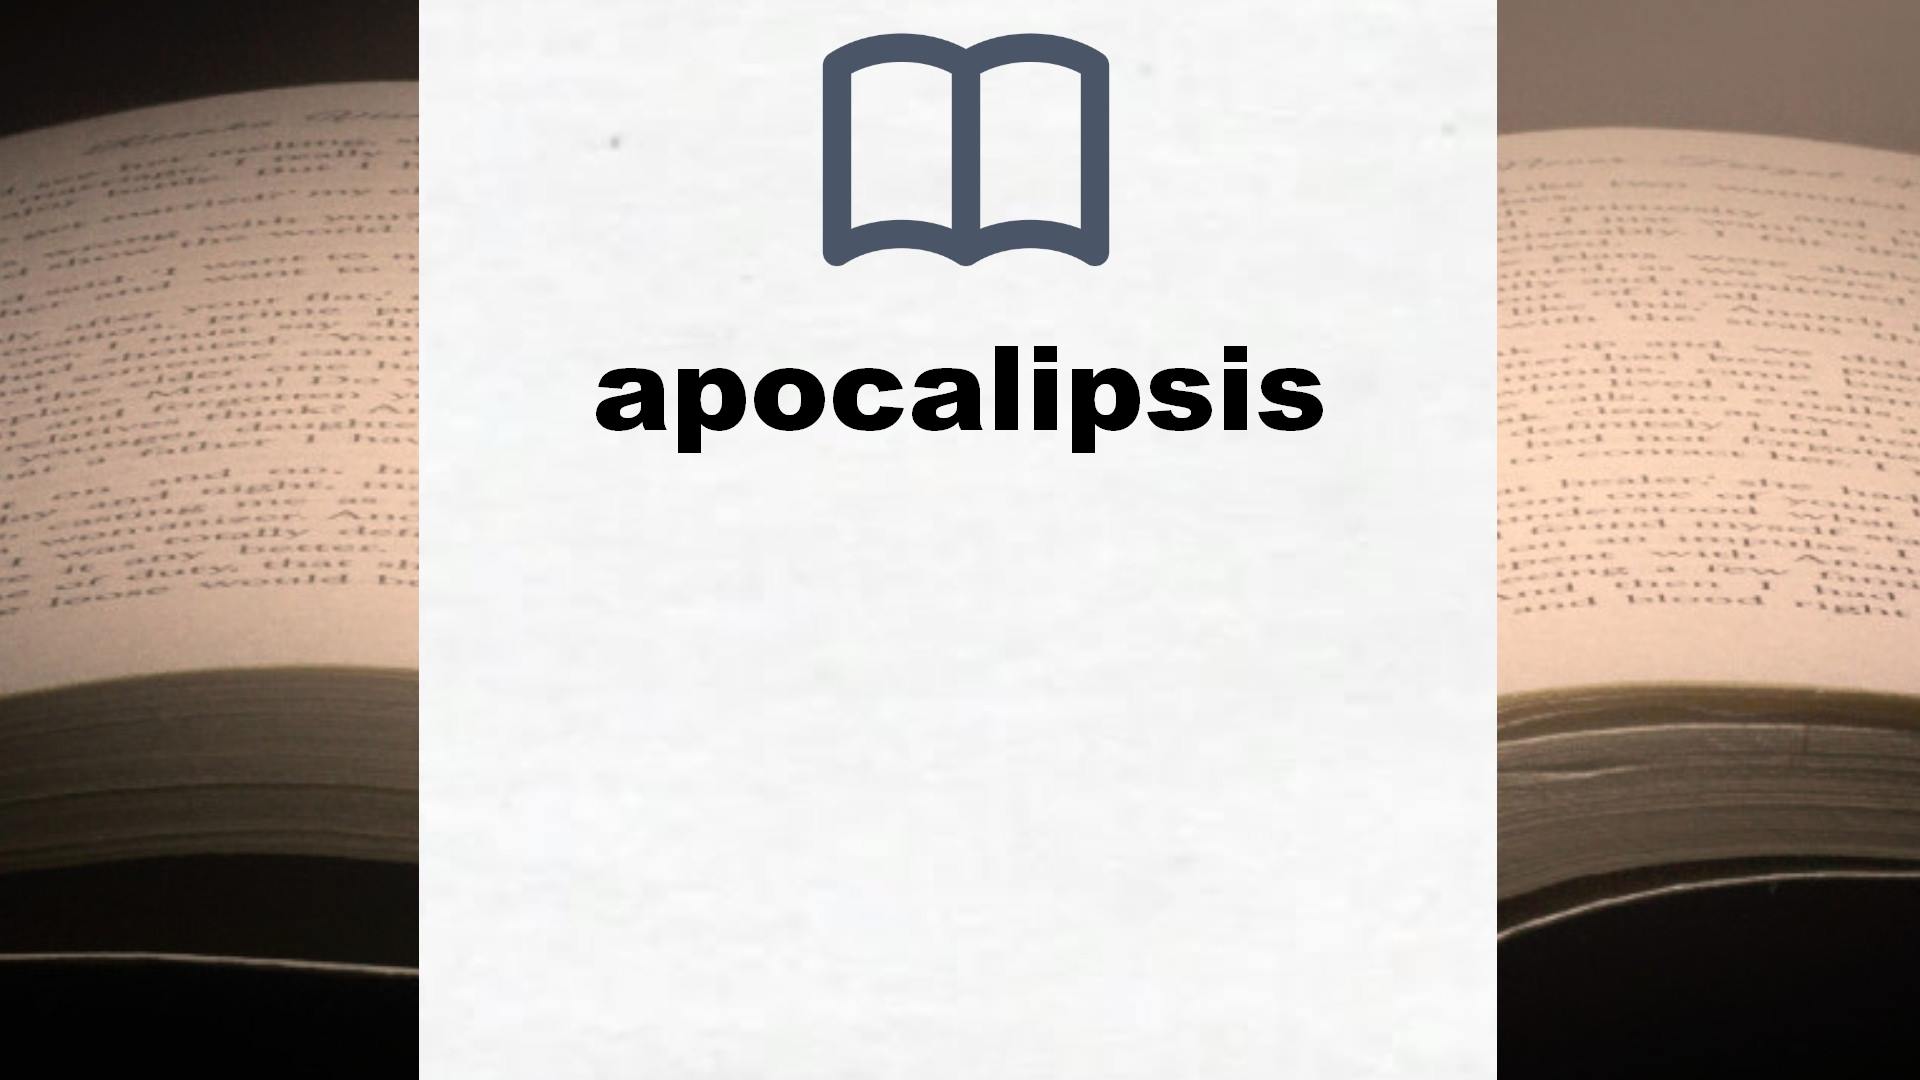 Libros sobre apocalipsis